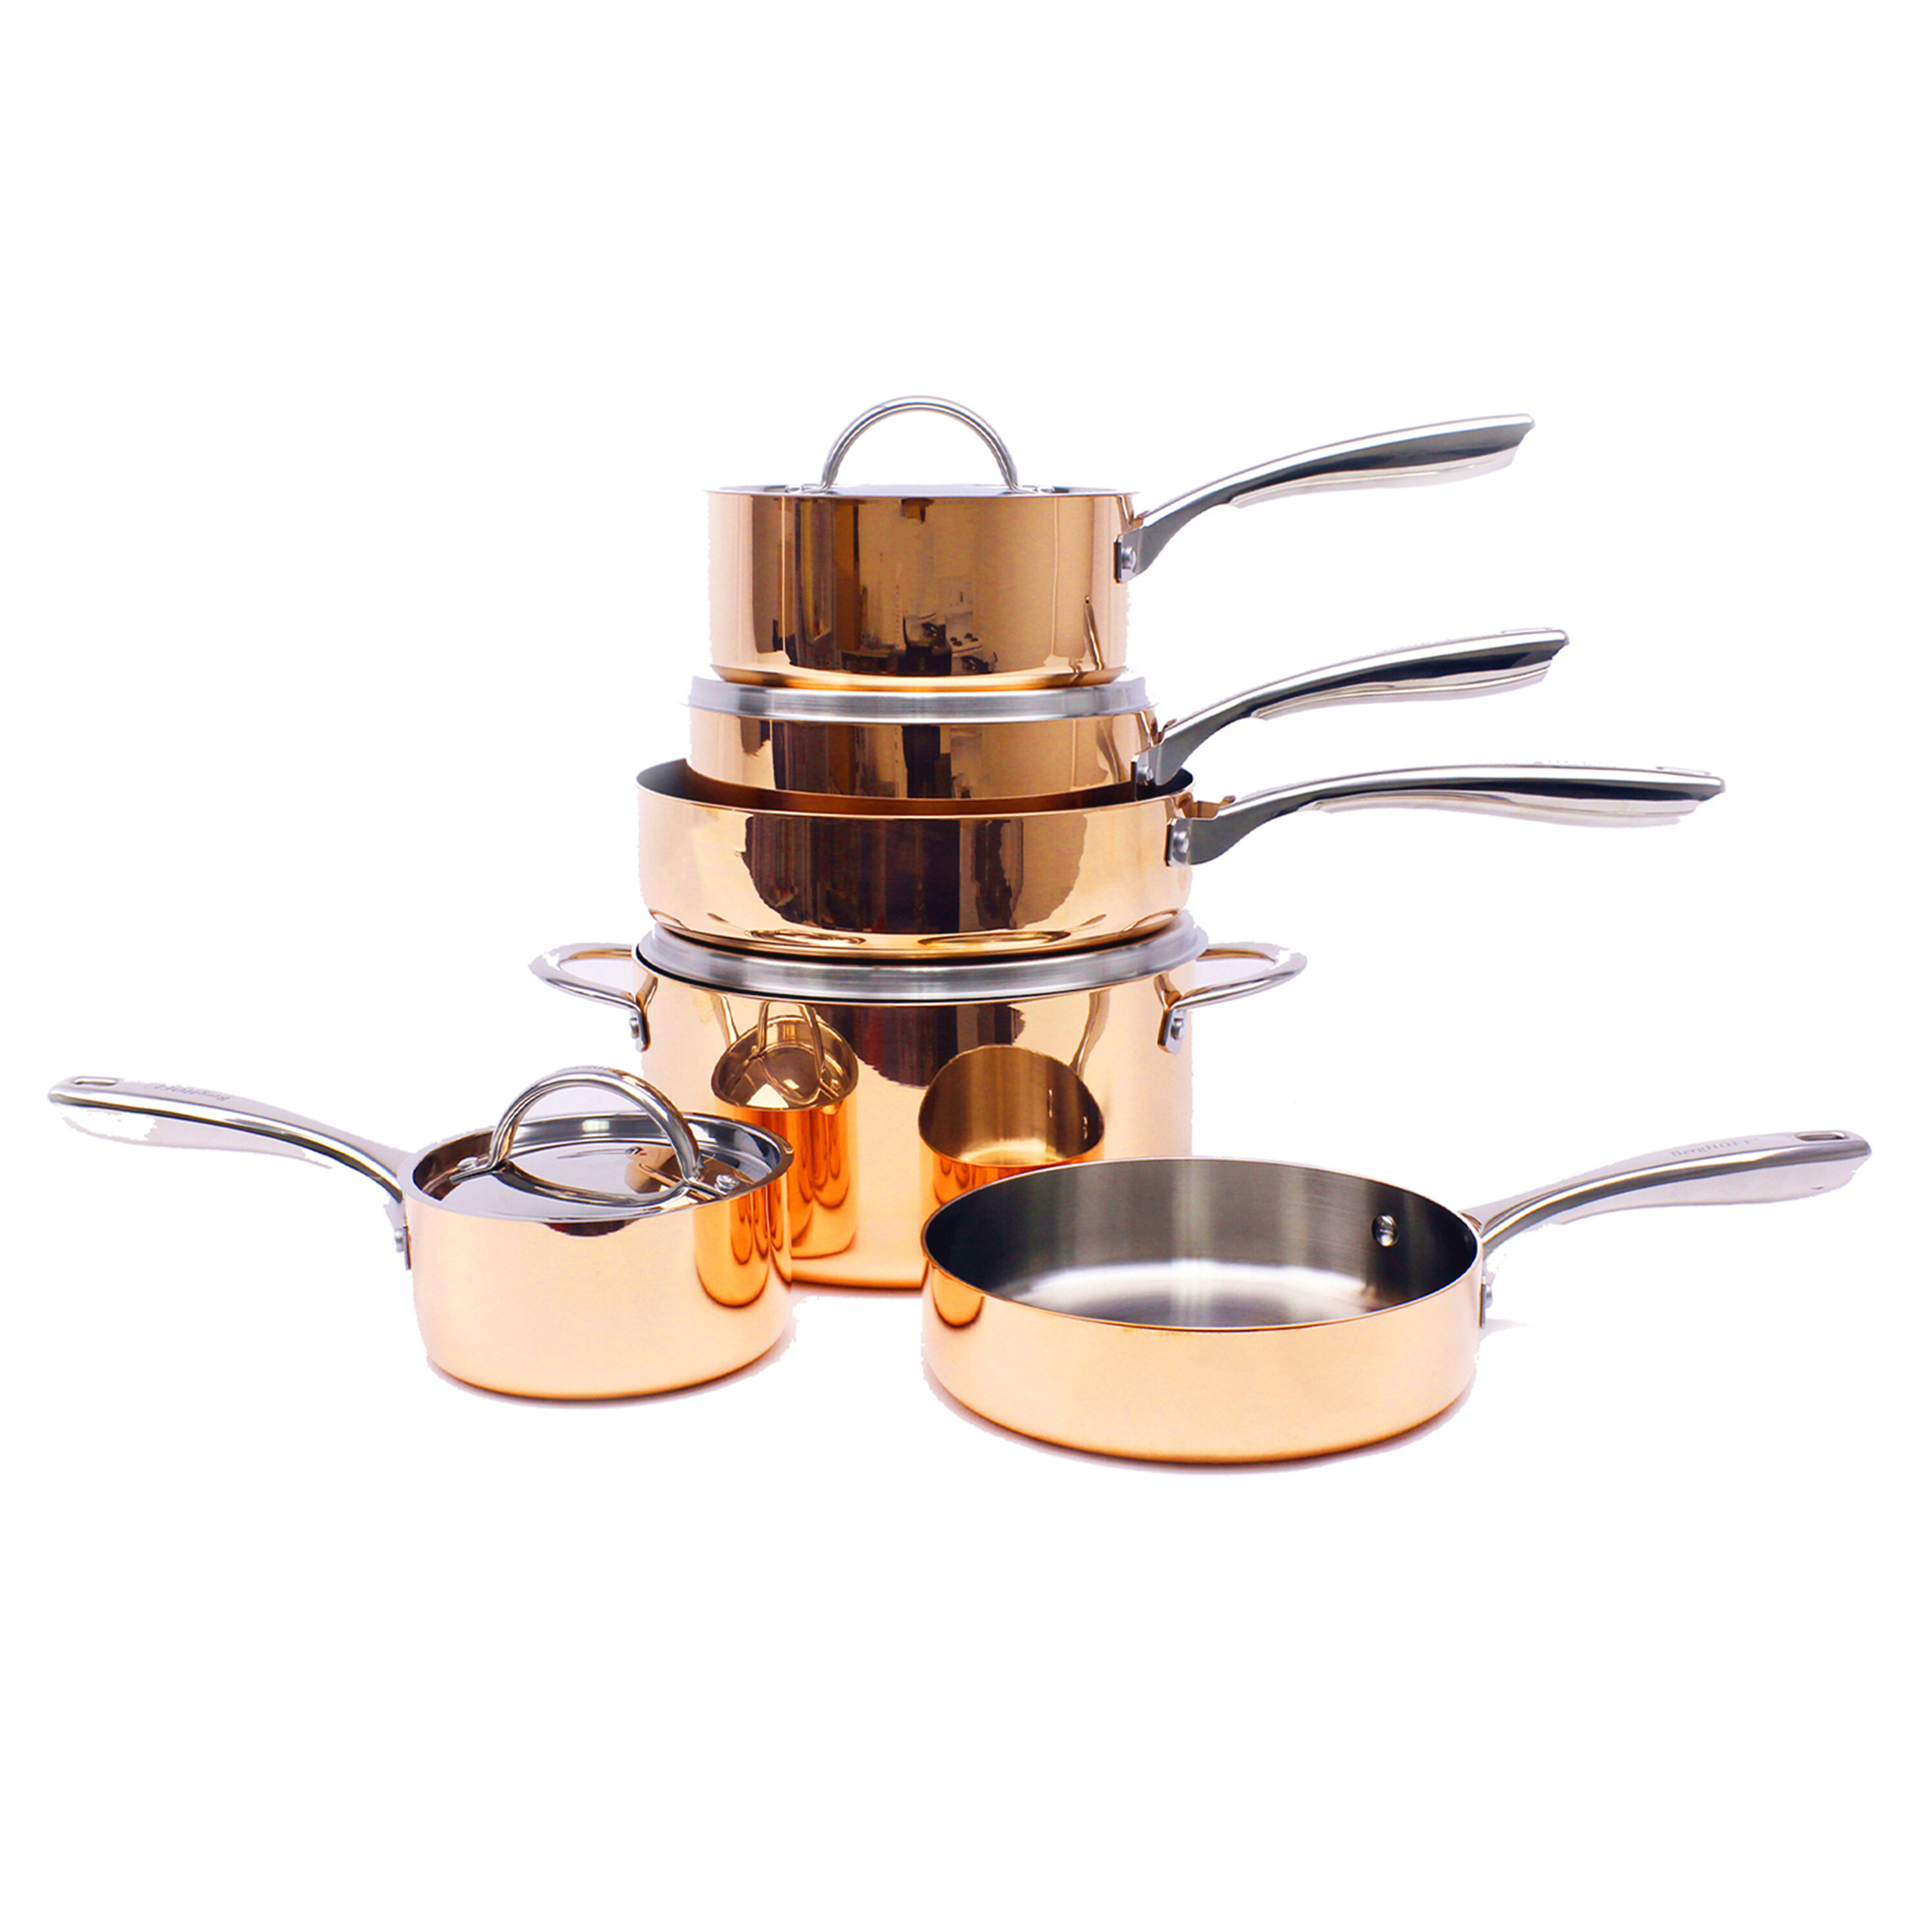 https://assets.wfcdn.com/im/91895083/compr-r85/1304/130405875/berghoff-international-10-piece-stainless-steel-cookware-set.jpg